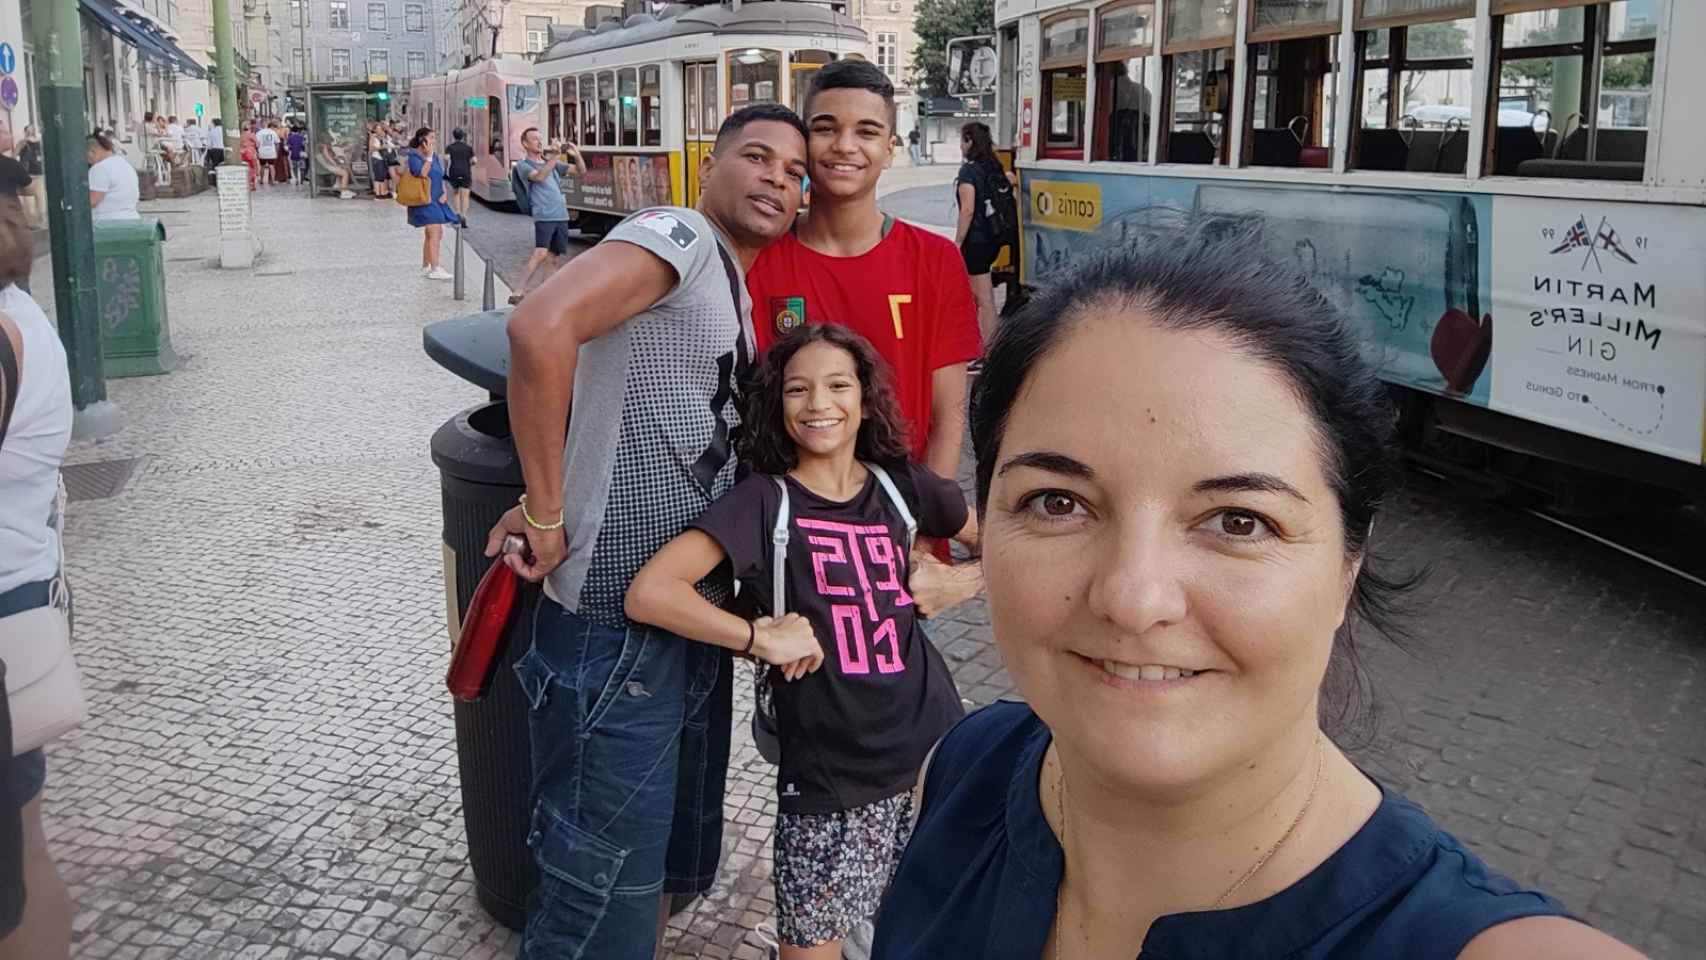 Los cuatro miembros de la familia zaragozana con altas capacidades visitando Portugal.